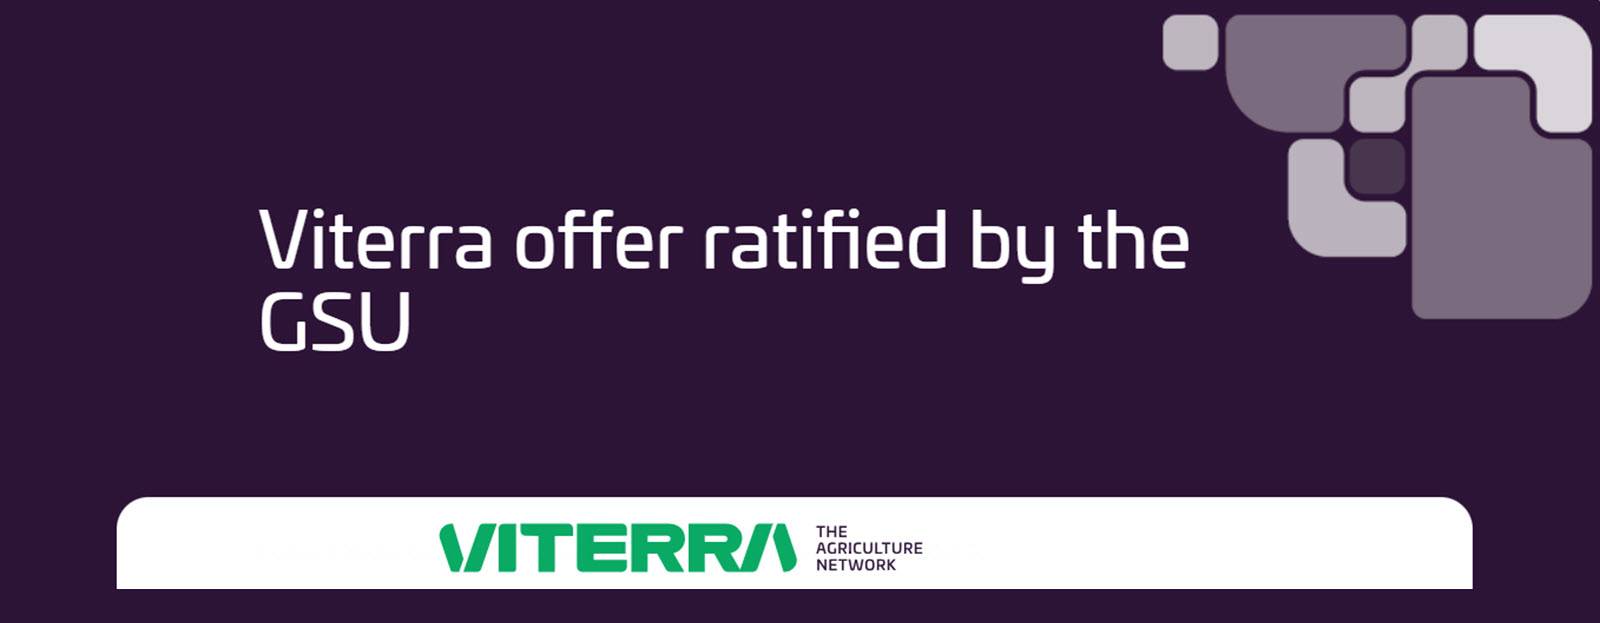 Viterra offer ratified